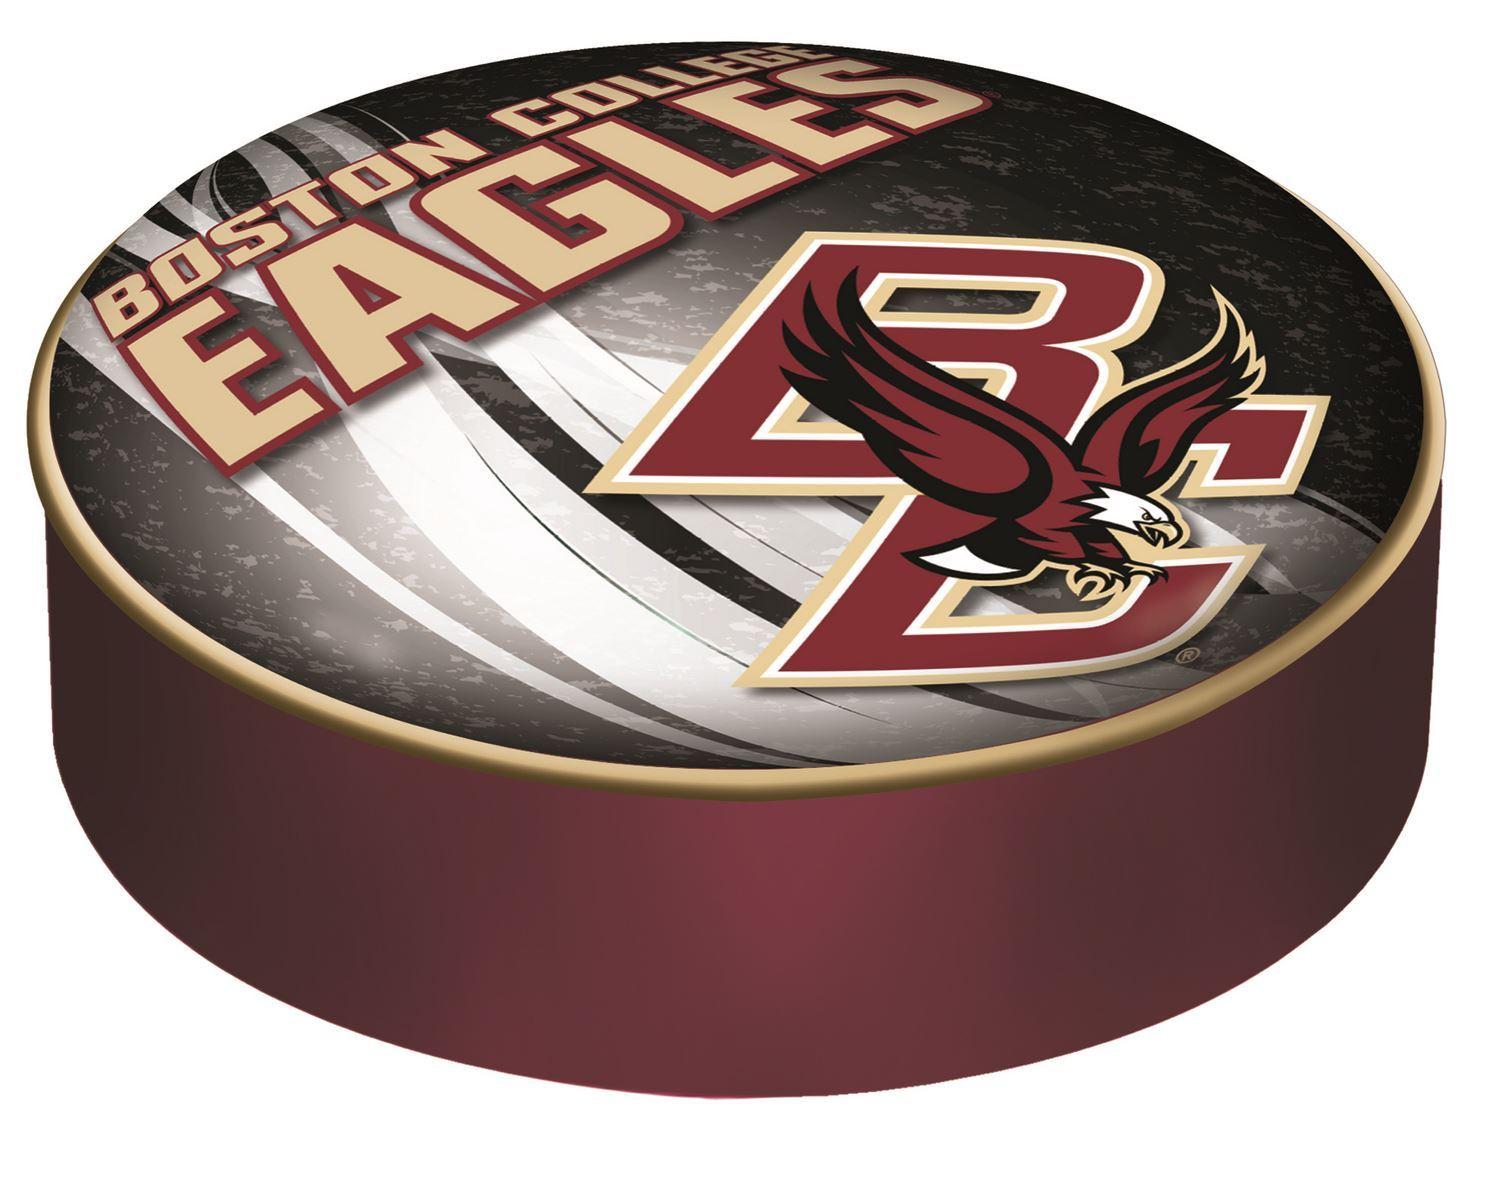 Boston College Eagles Logo - Boston College Seat Cover - BC Eagles Logo - Billiards and Game Room ...